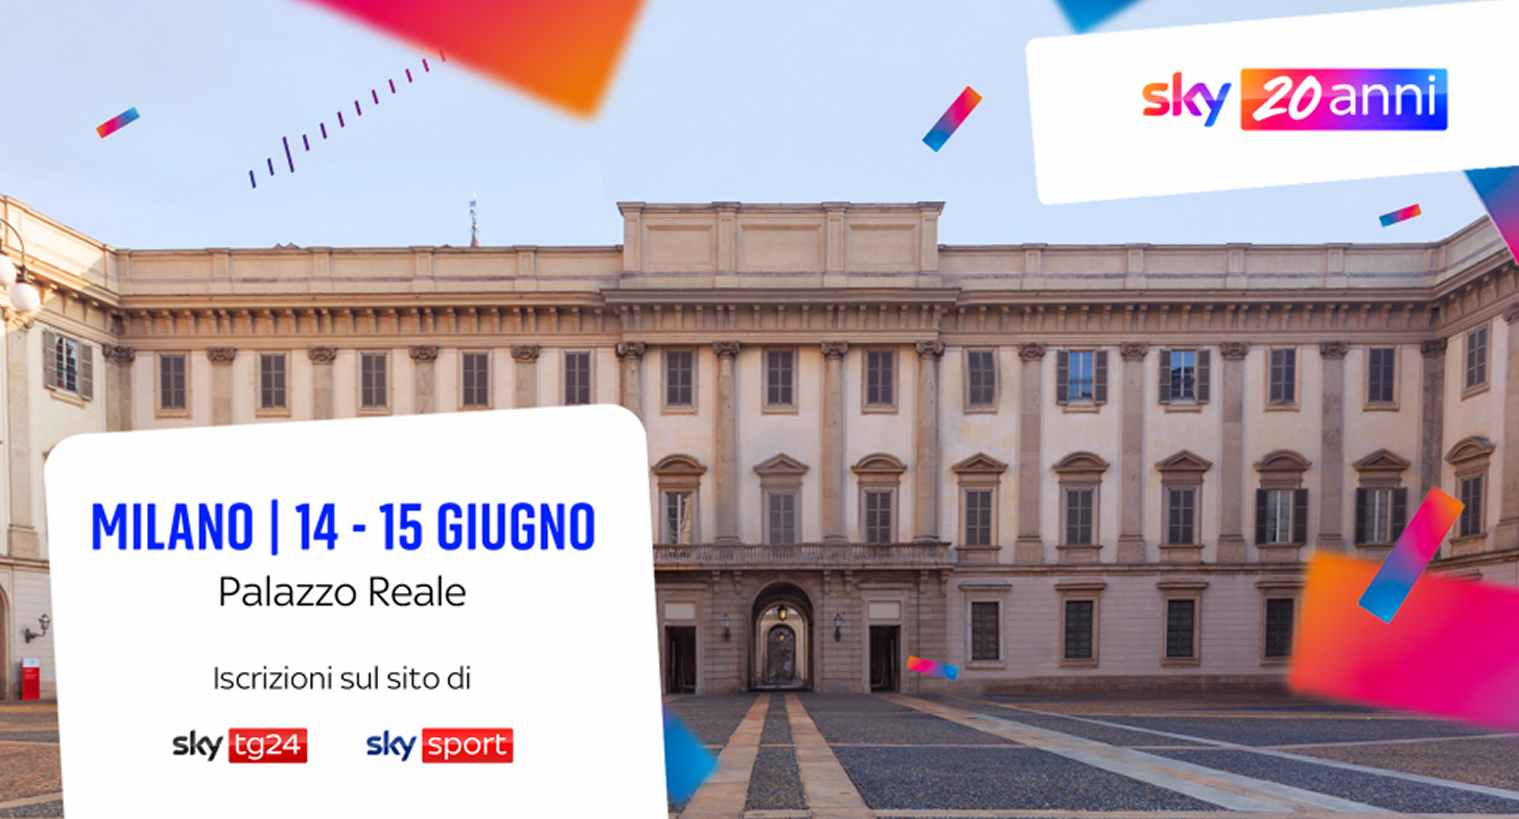 #Sky20Anni, annunciati nuovi grandi ospiti per la due giorni a Palazzo Reale - Milano